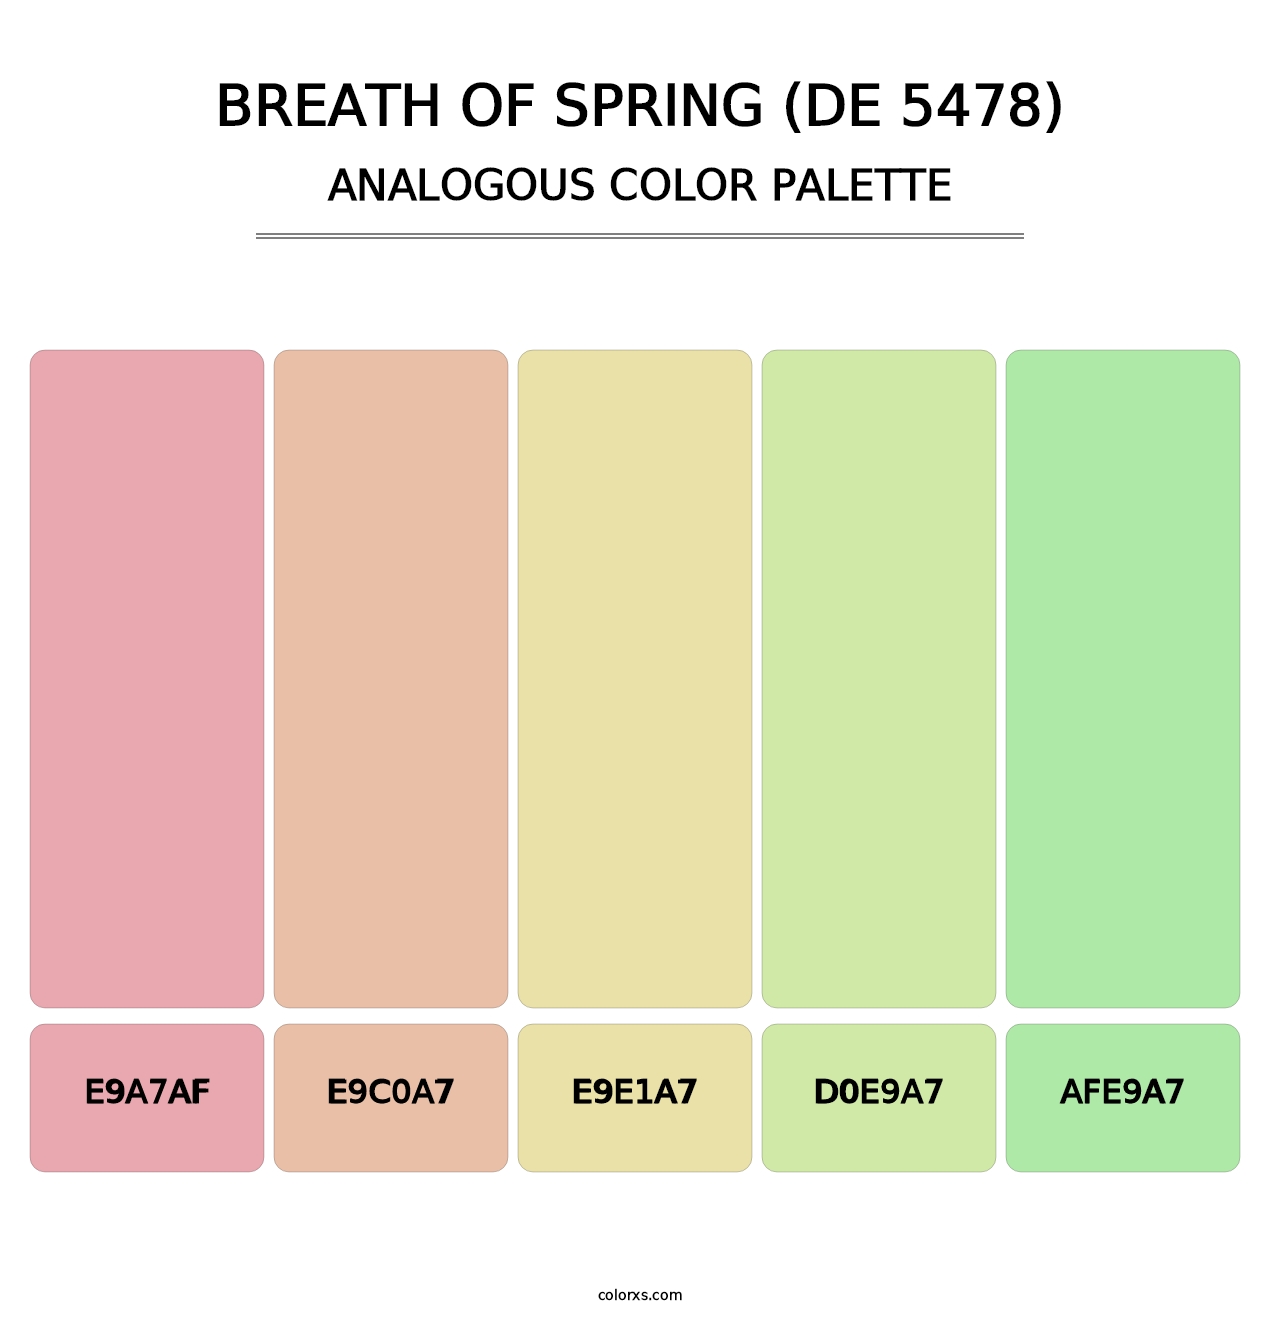 Breath of Spring (DE 5478) - Analogous Color Palette